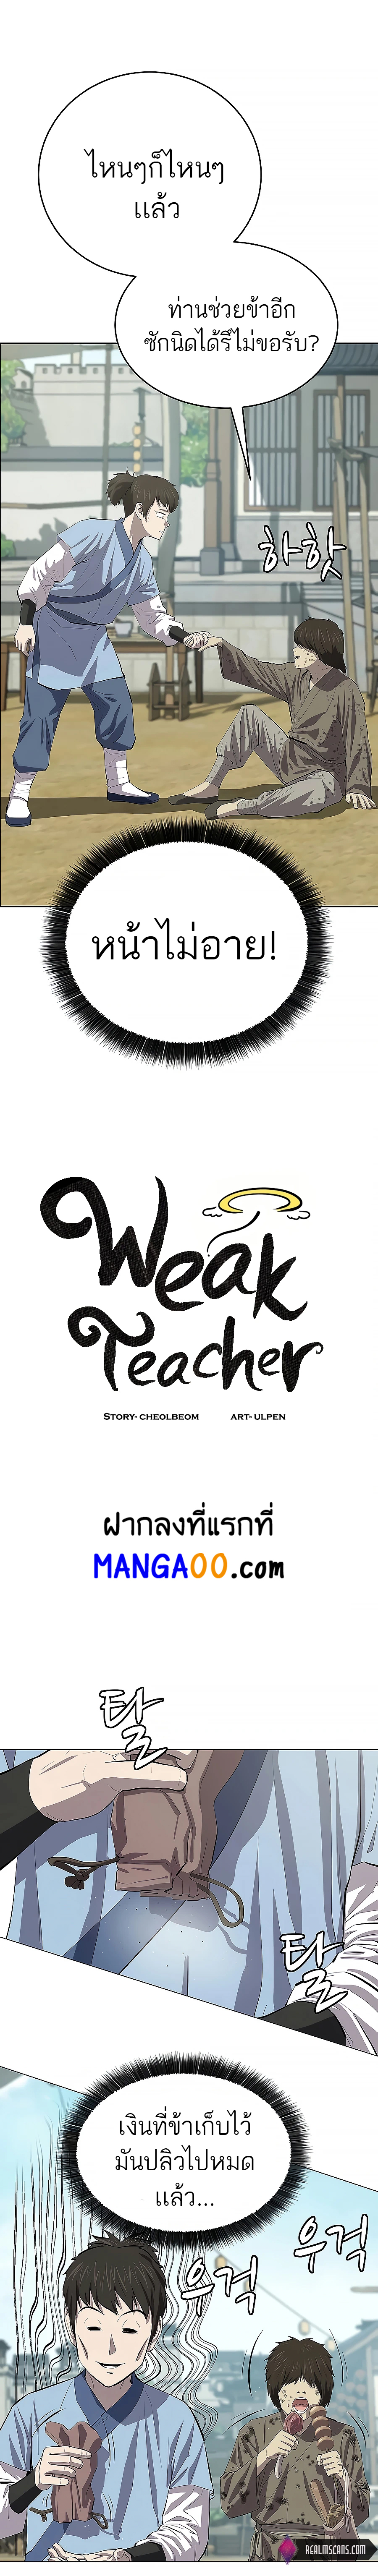 Weak Teacher